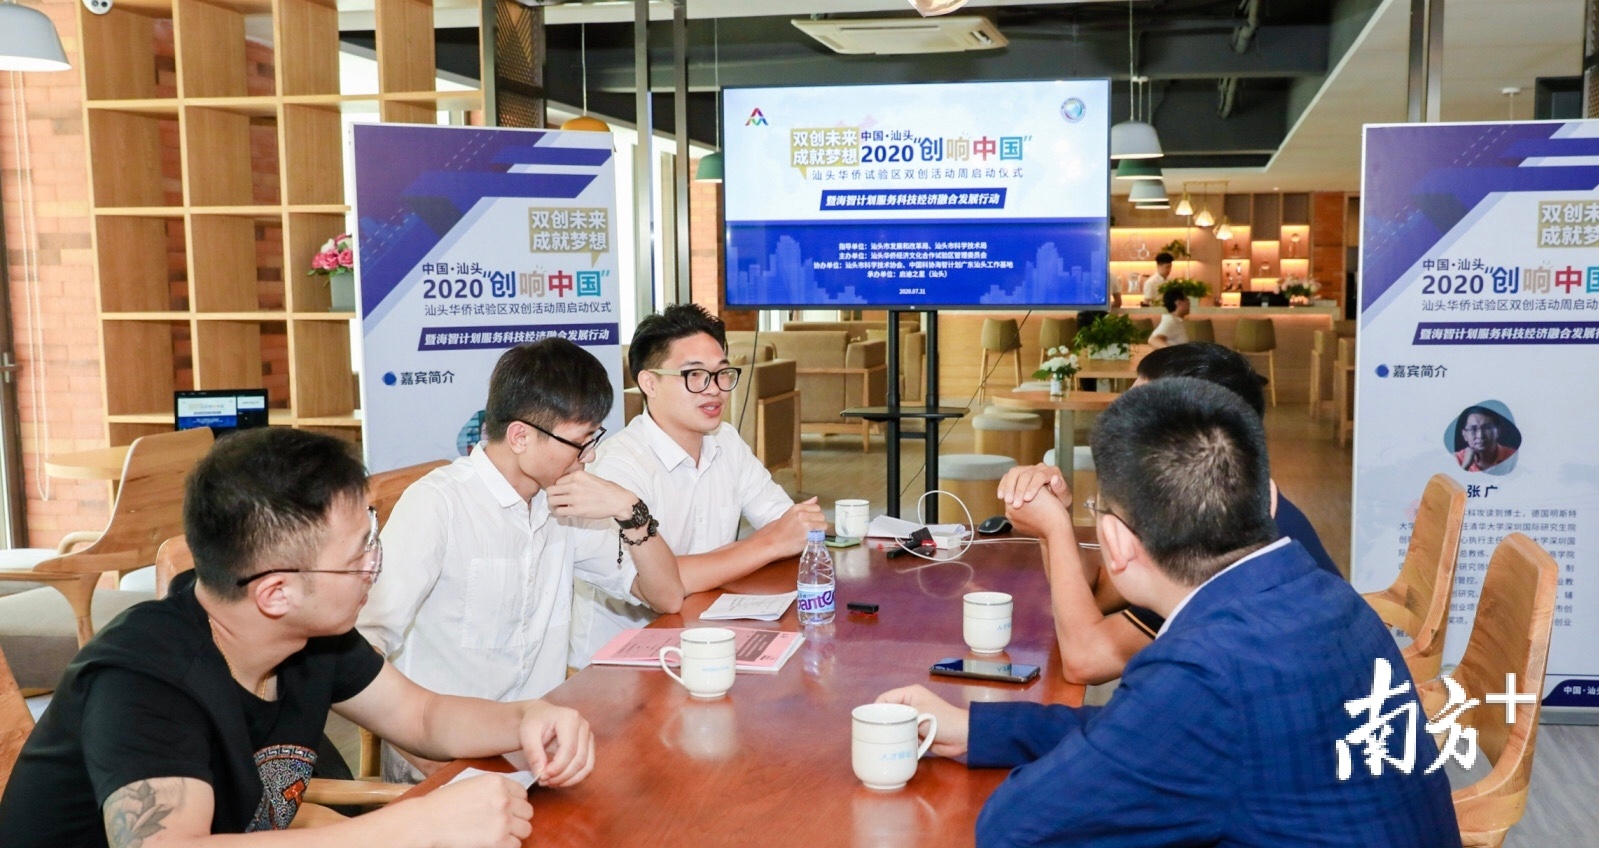 汕头华侨试验区正式启动“创响中国”双创活动周暨海智计划服务科技经济融合发展活动。